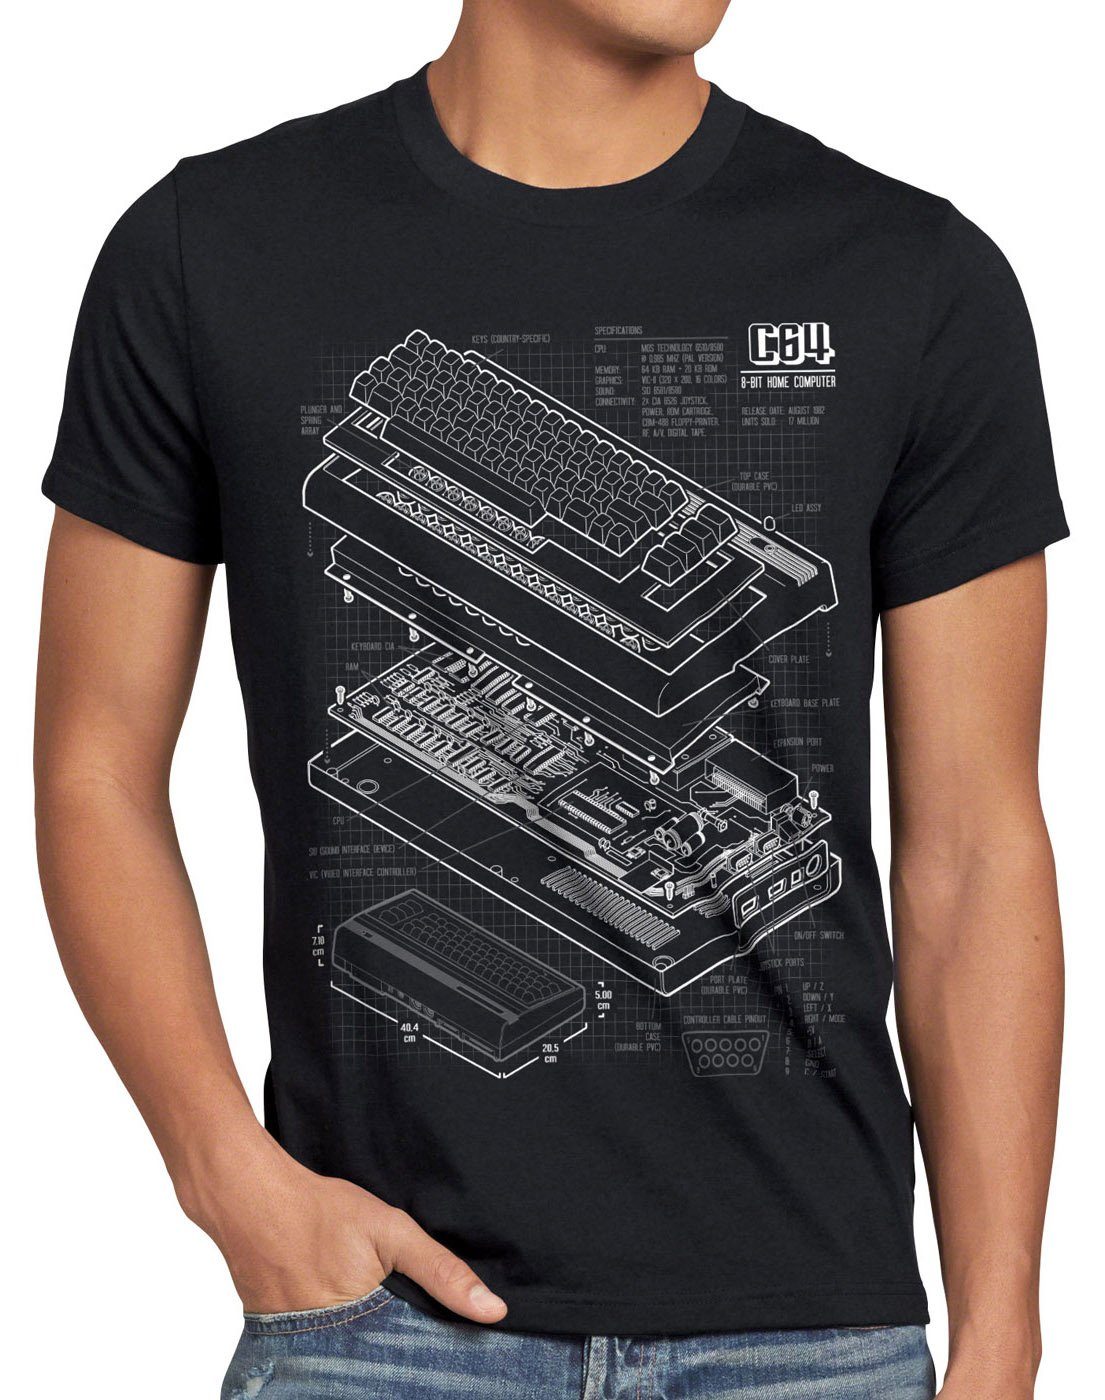 style3 Print-Shirt Herren T-Shirt C64 Heimcomputer Blaupause classic gamer schwarz